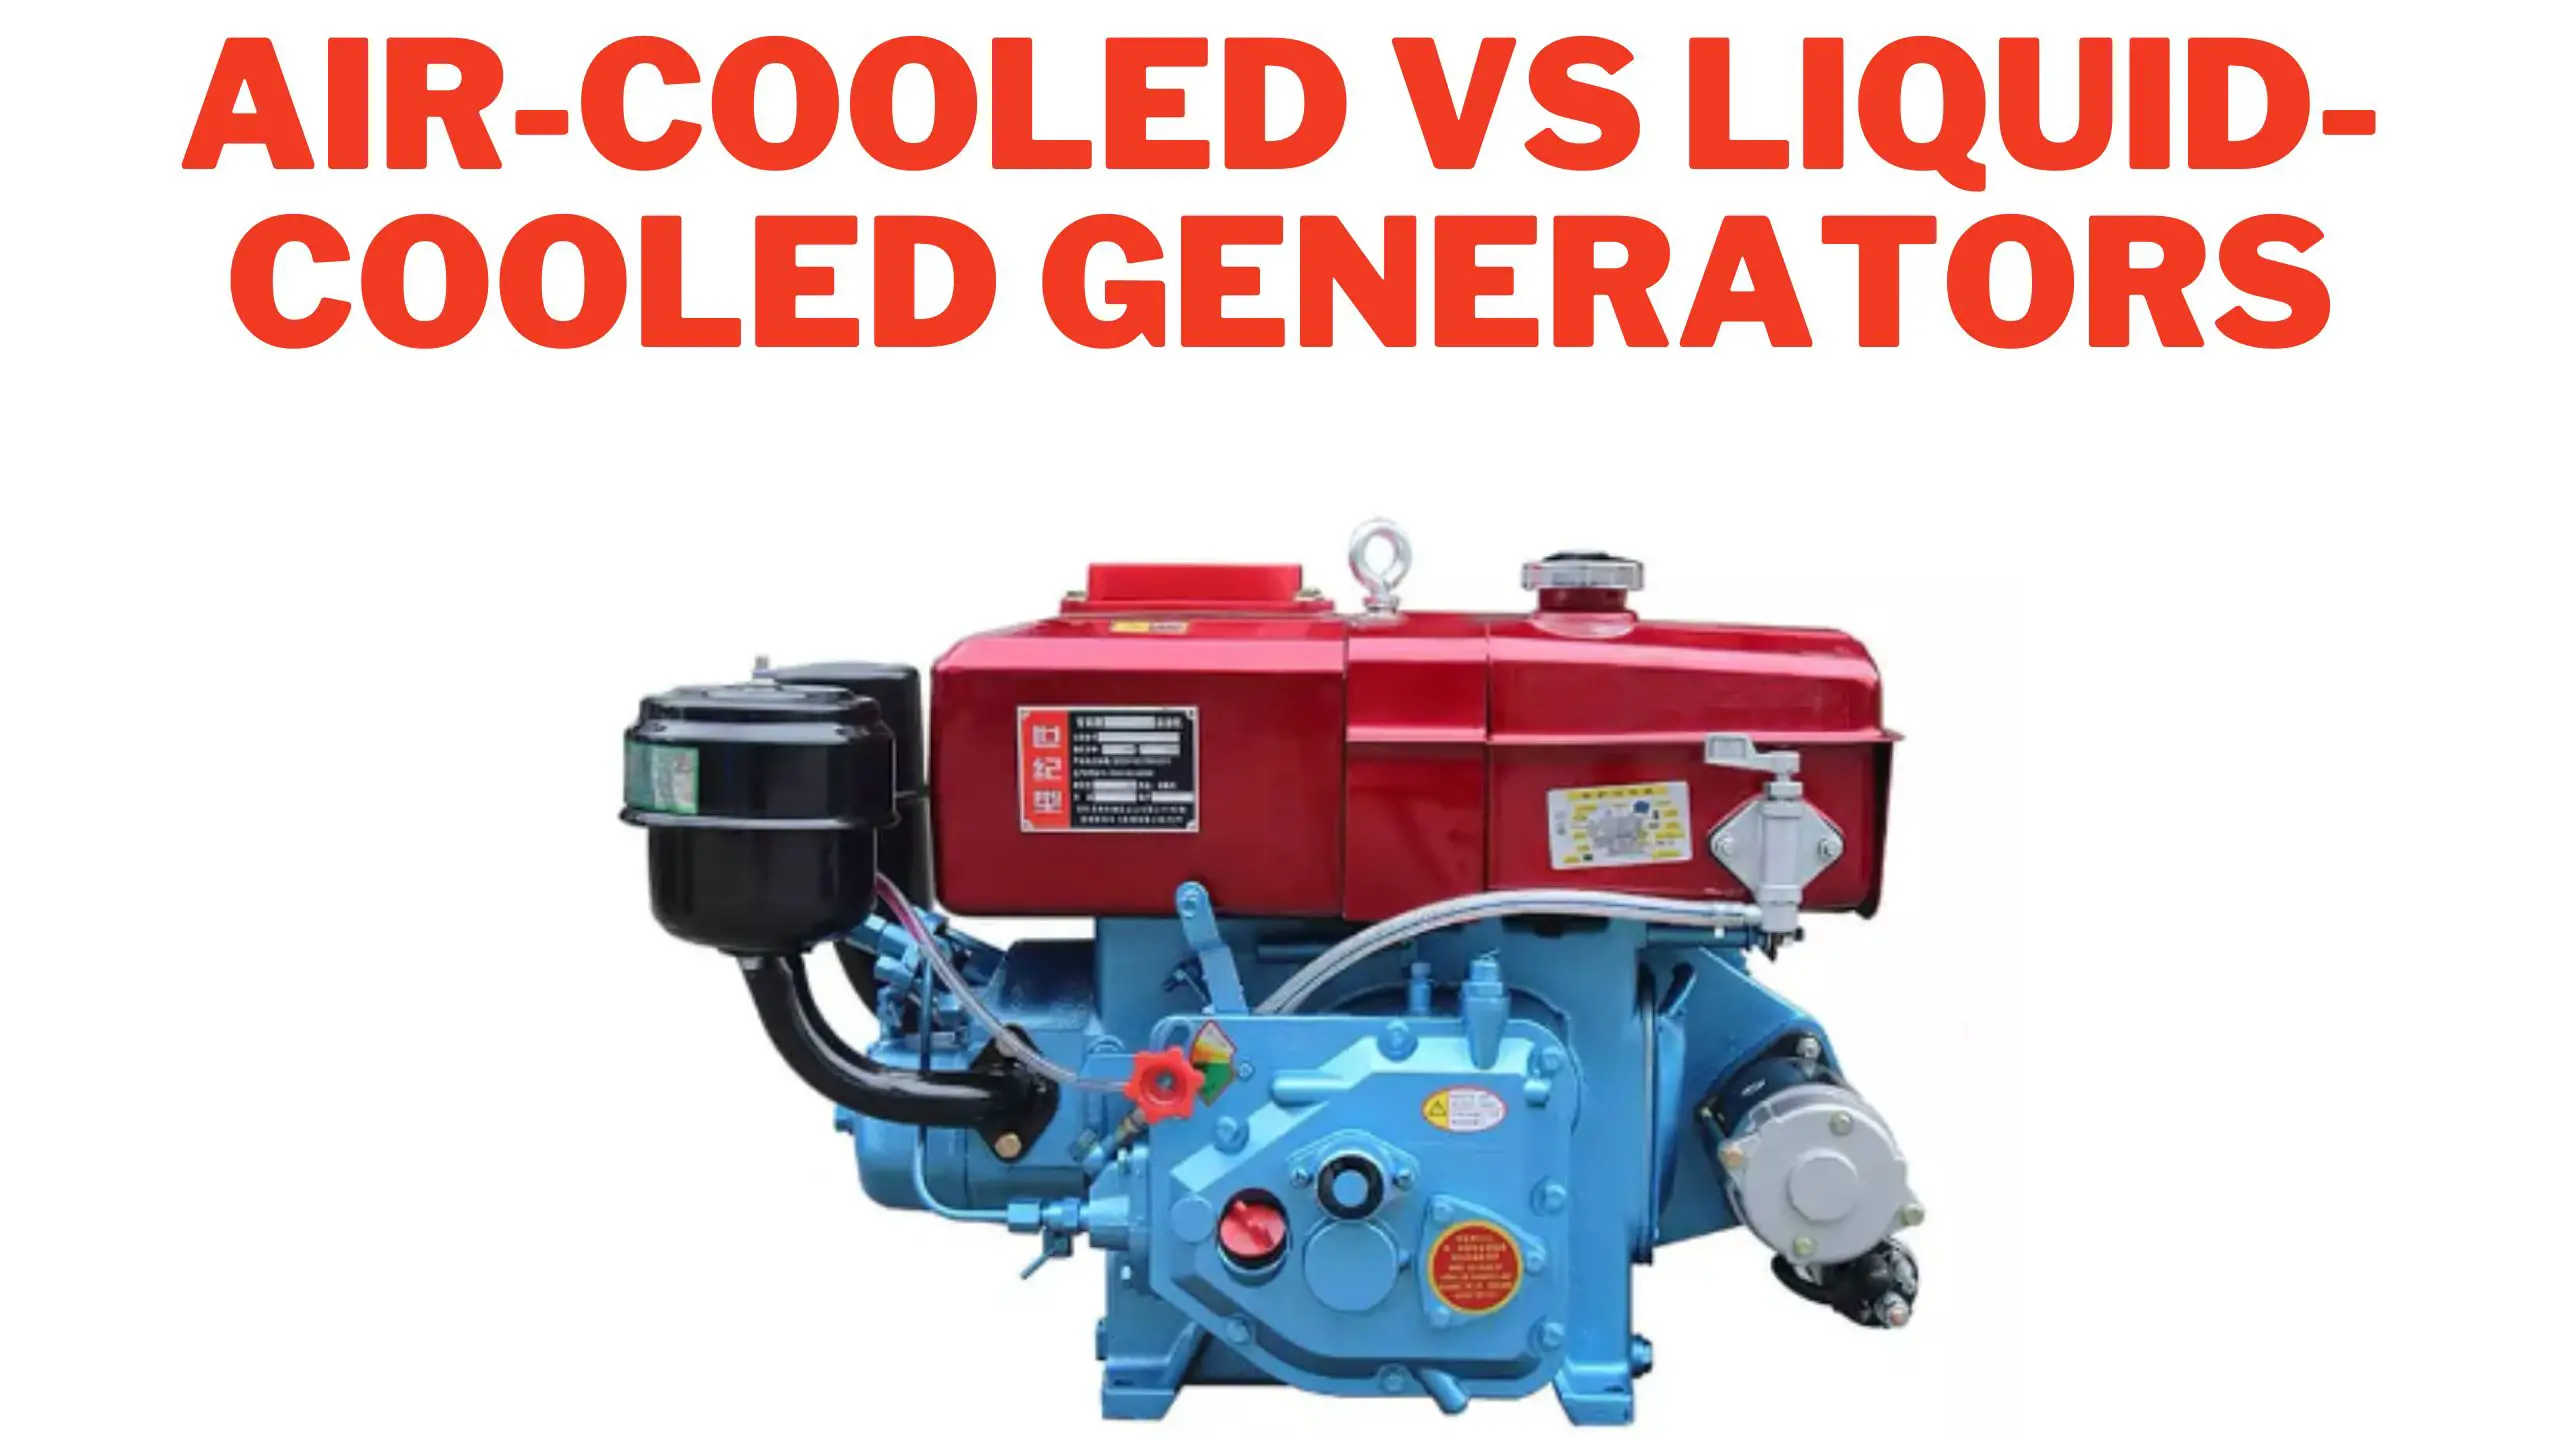 Air-Cooled vs Liquid-Cooled Generators